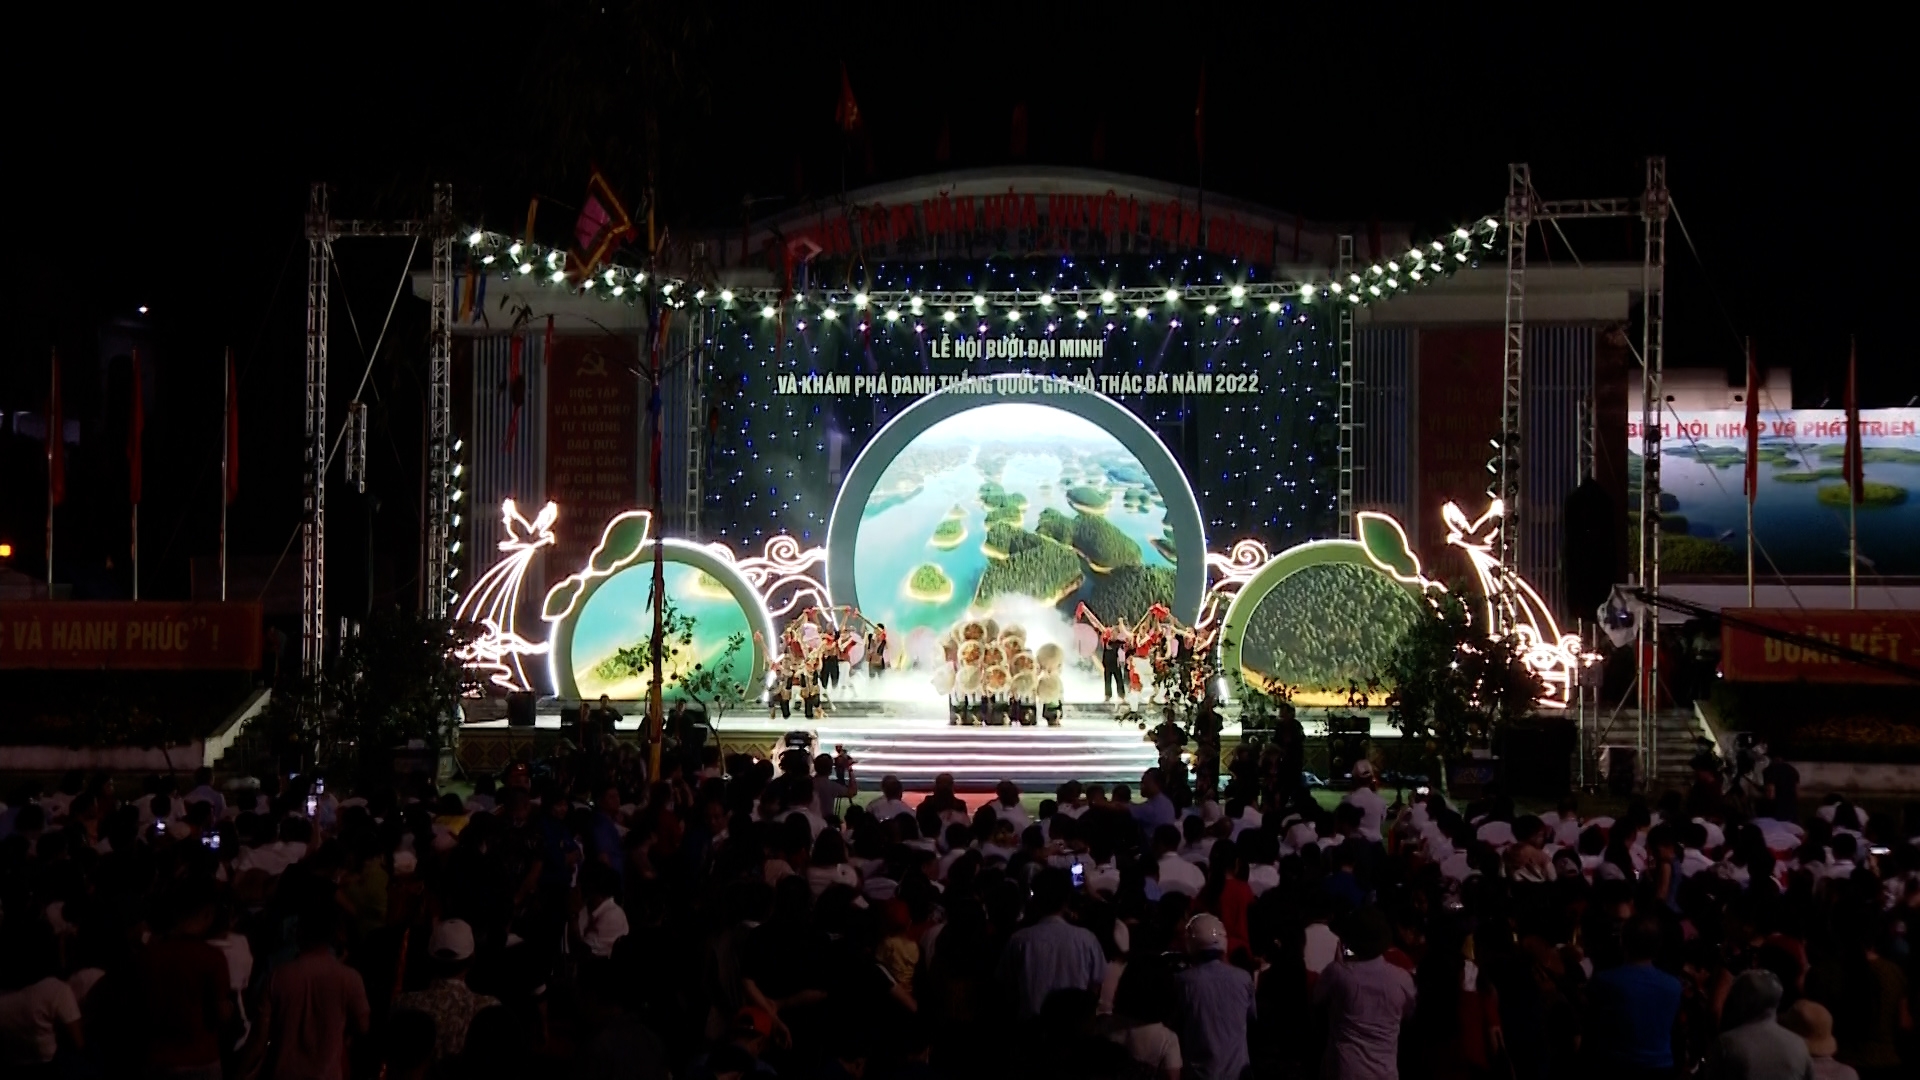 Tường thuật Khai mạc Lễ hội Bưởi Đại Minh và Khám phá danh thắng quốc gia hồ Thác Bà năm 2022